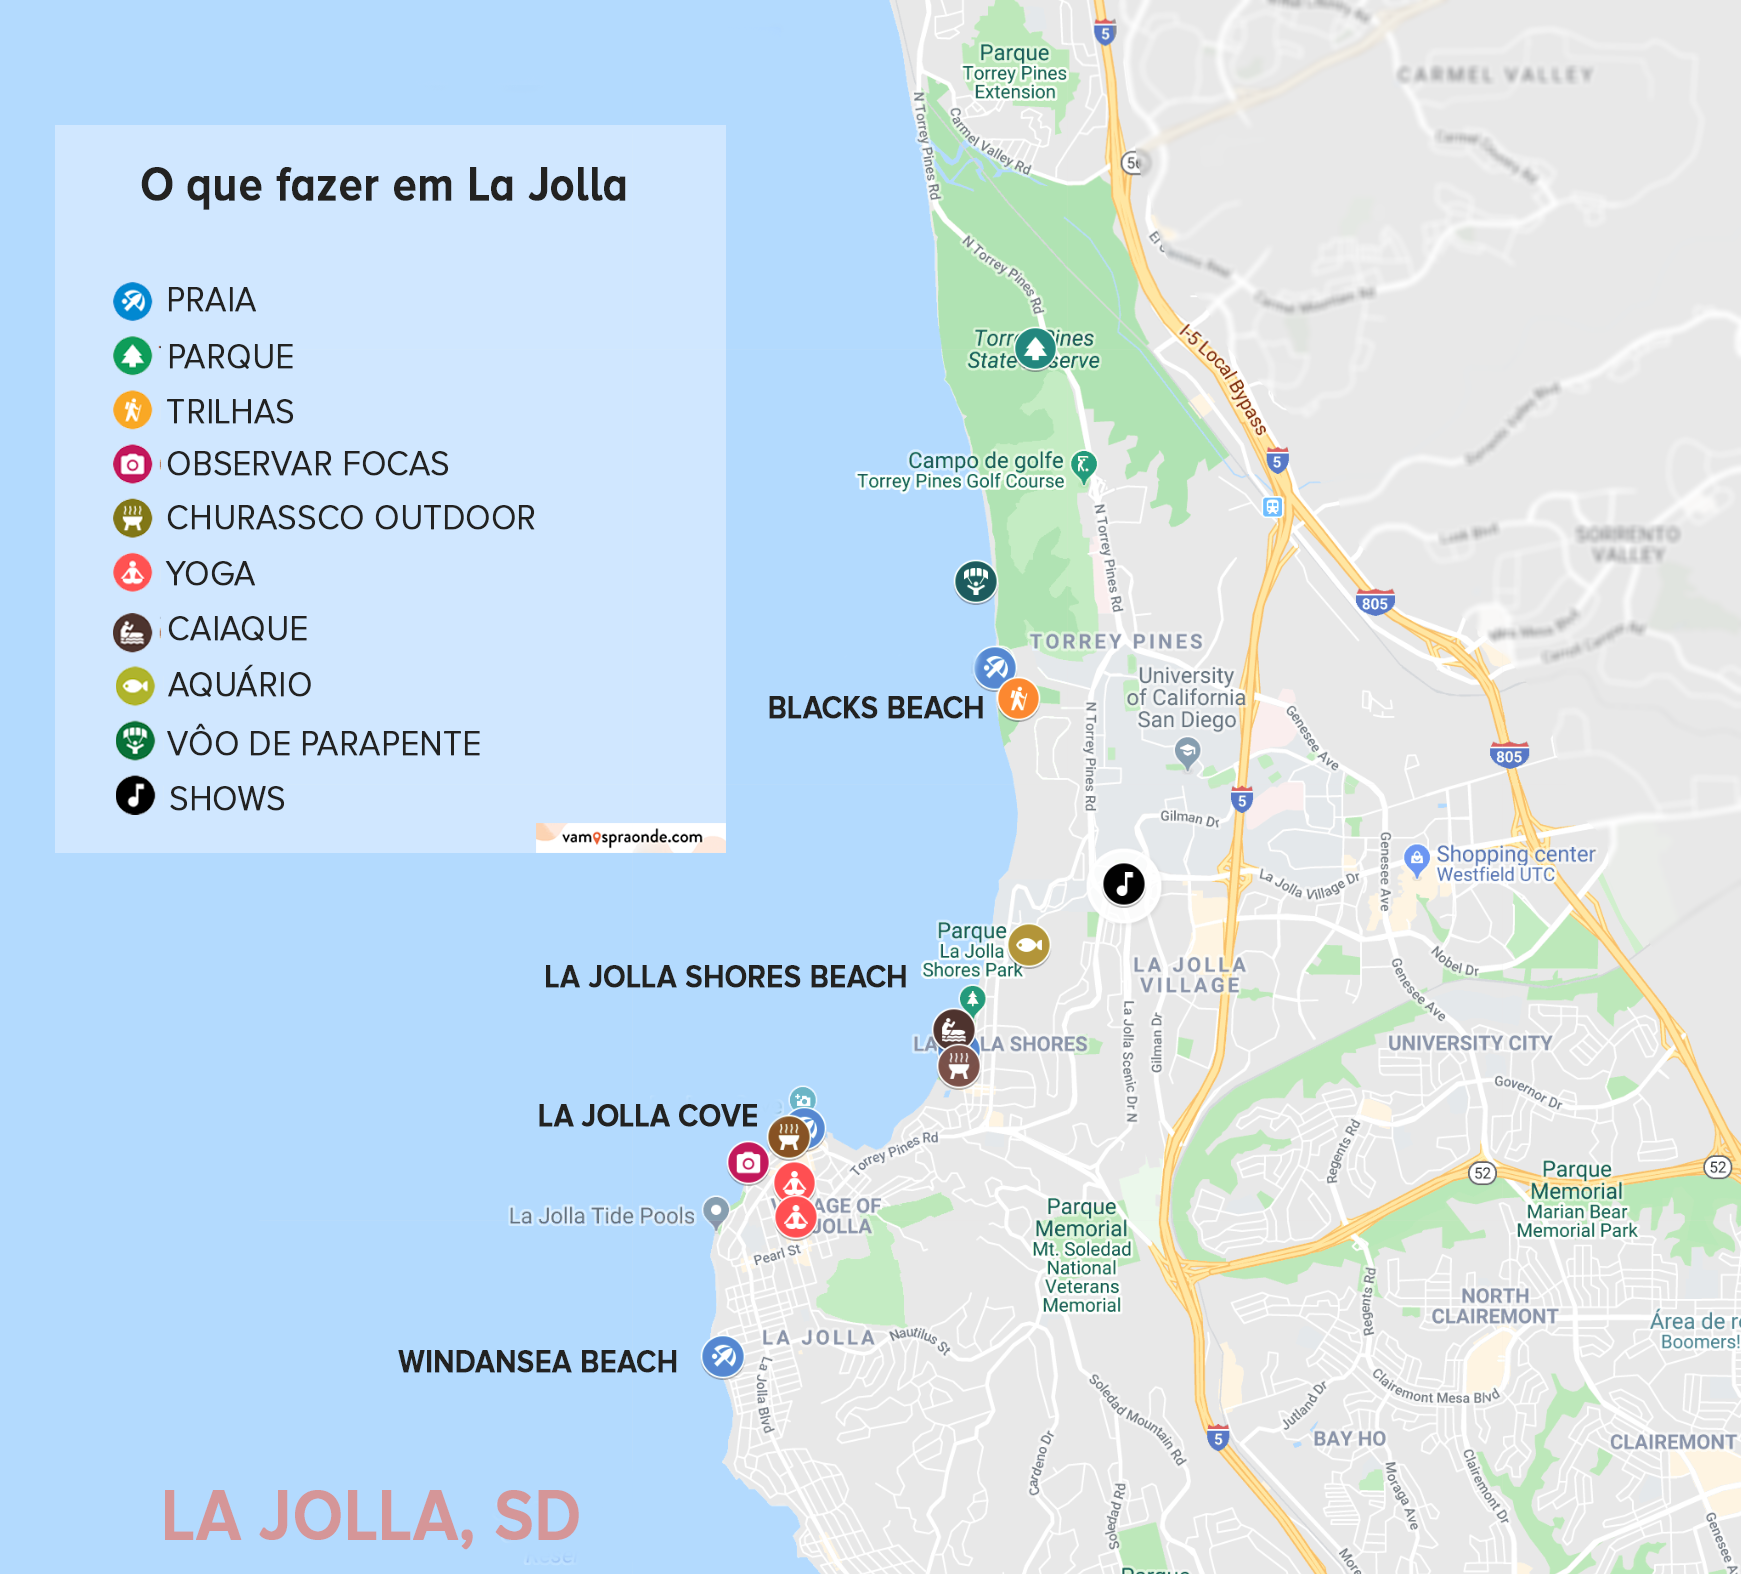 mapa mostrando onde estão as principais atrações de la jolla